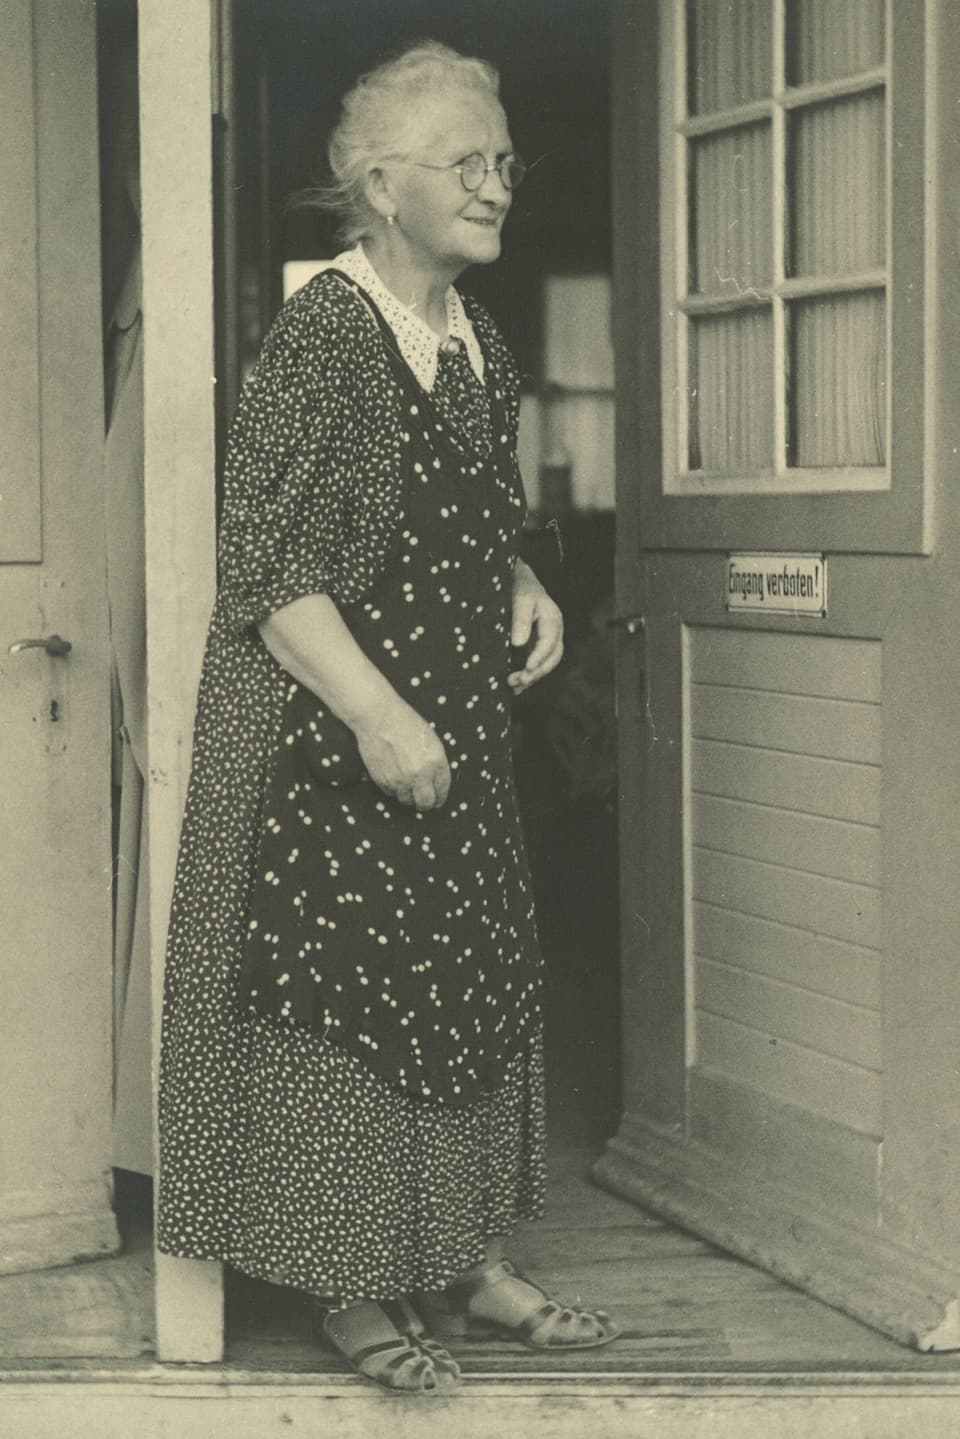 Schwarz-Weiss-Fotografie von einer alten Frau mit Brille, die vor einer offenen Türe steht.